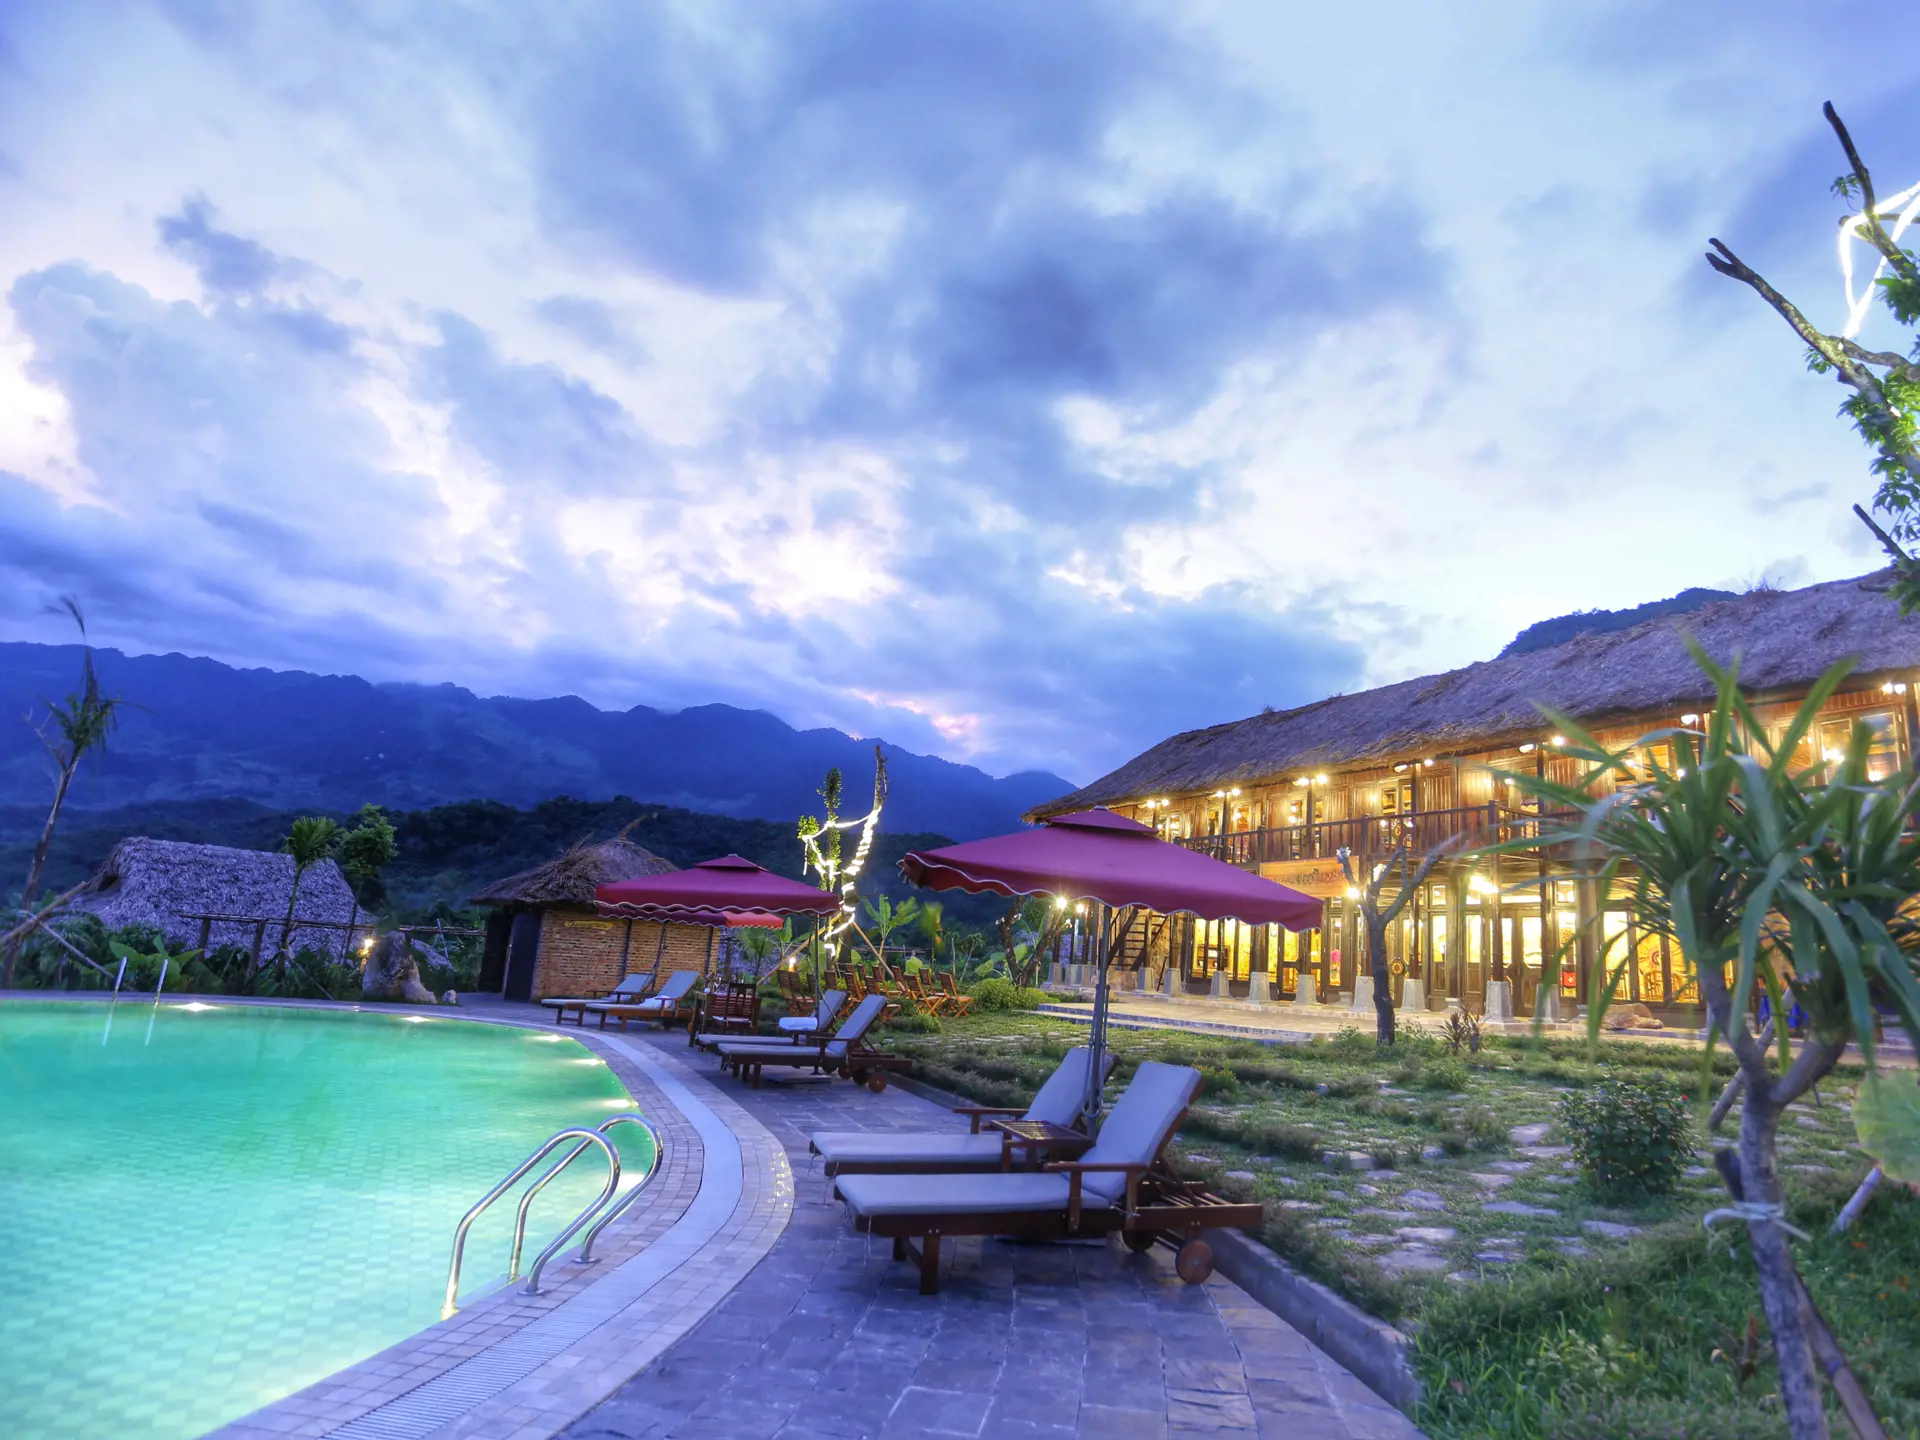 LUKSUS PÅ LANDET - Mai Chau Eco Lodge er bygget i traditionel stil og ligger omgivet af bjerge, rismarker og landsbyer. Efter dagens cykel- og vandreture er det godt at kunne forkæle sig selv med en dukkert, Check Point Travel